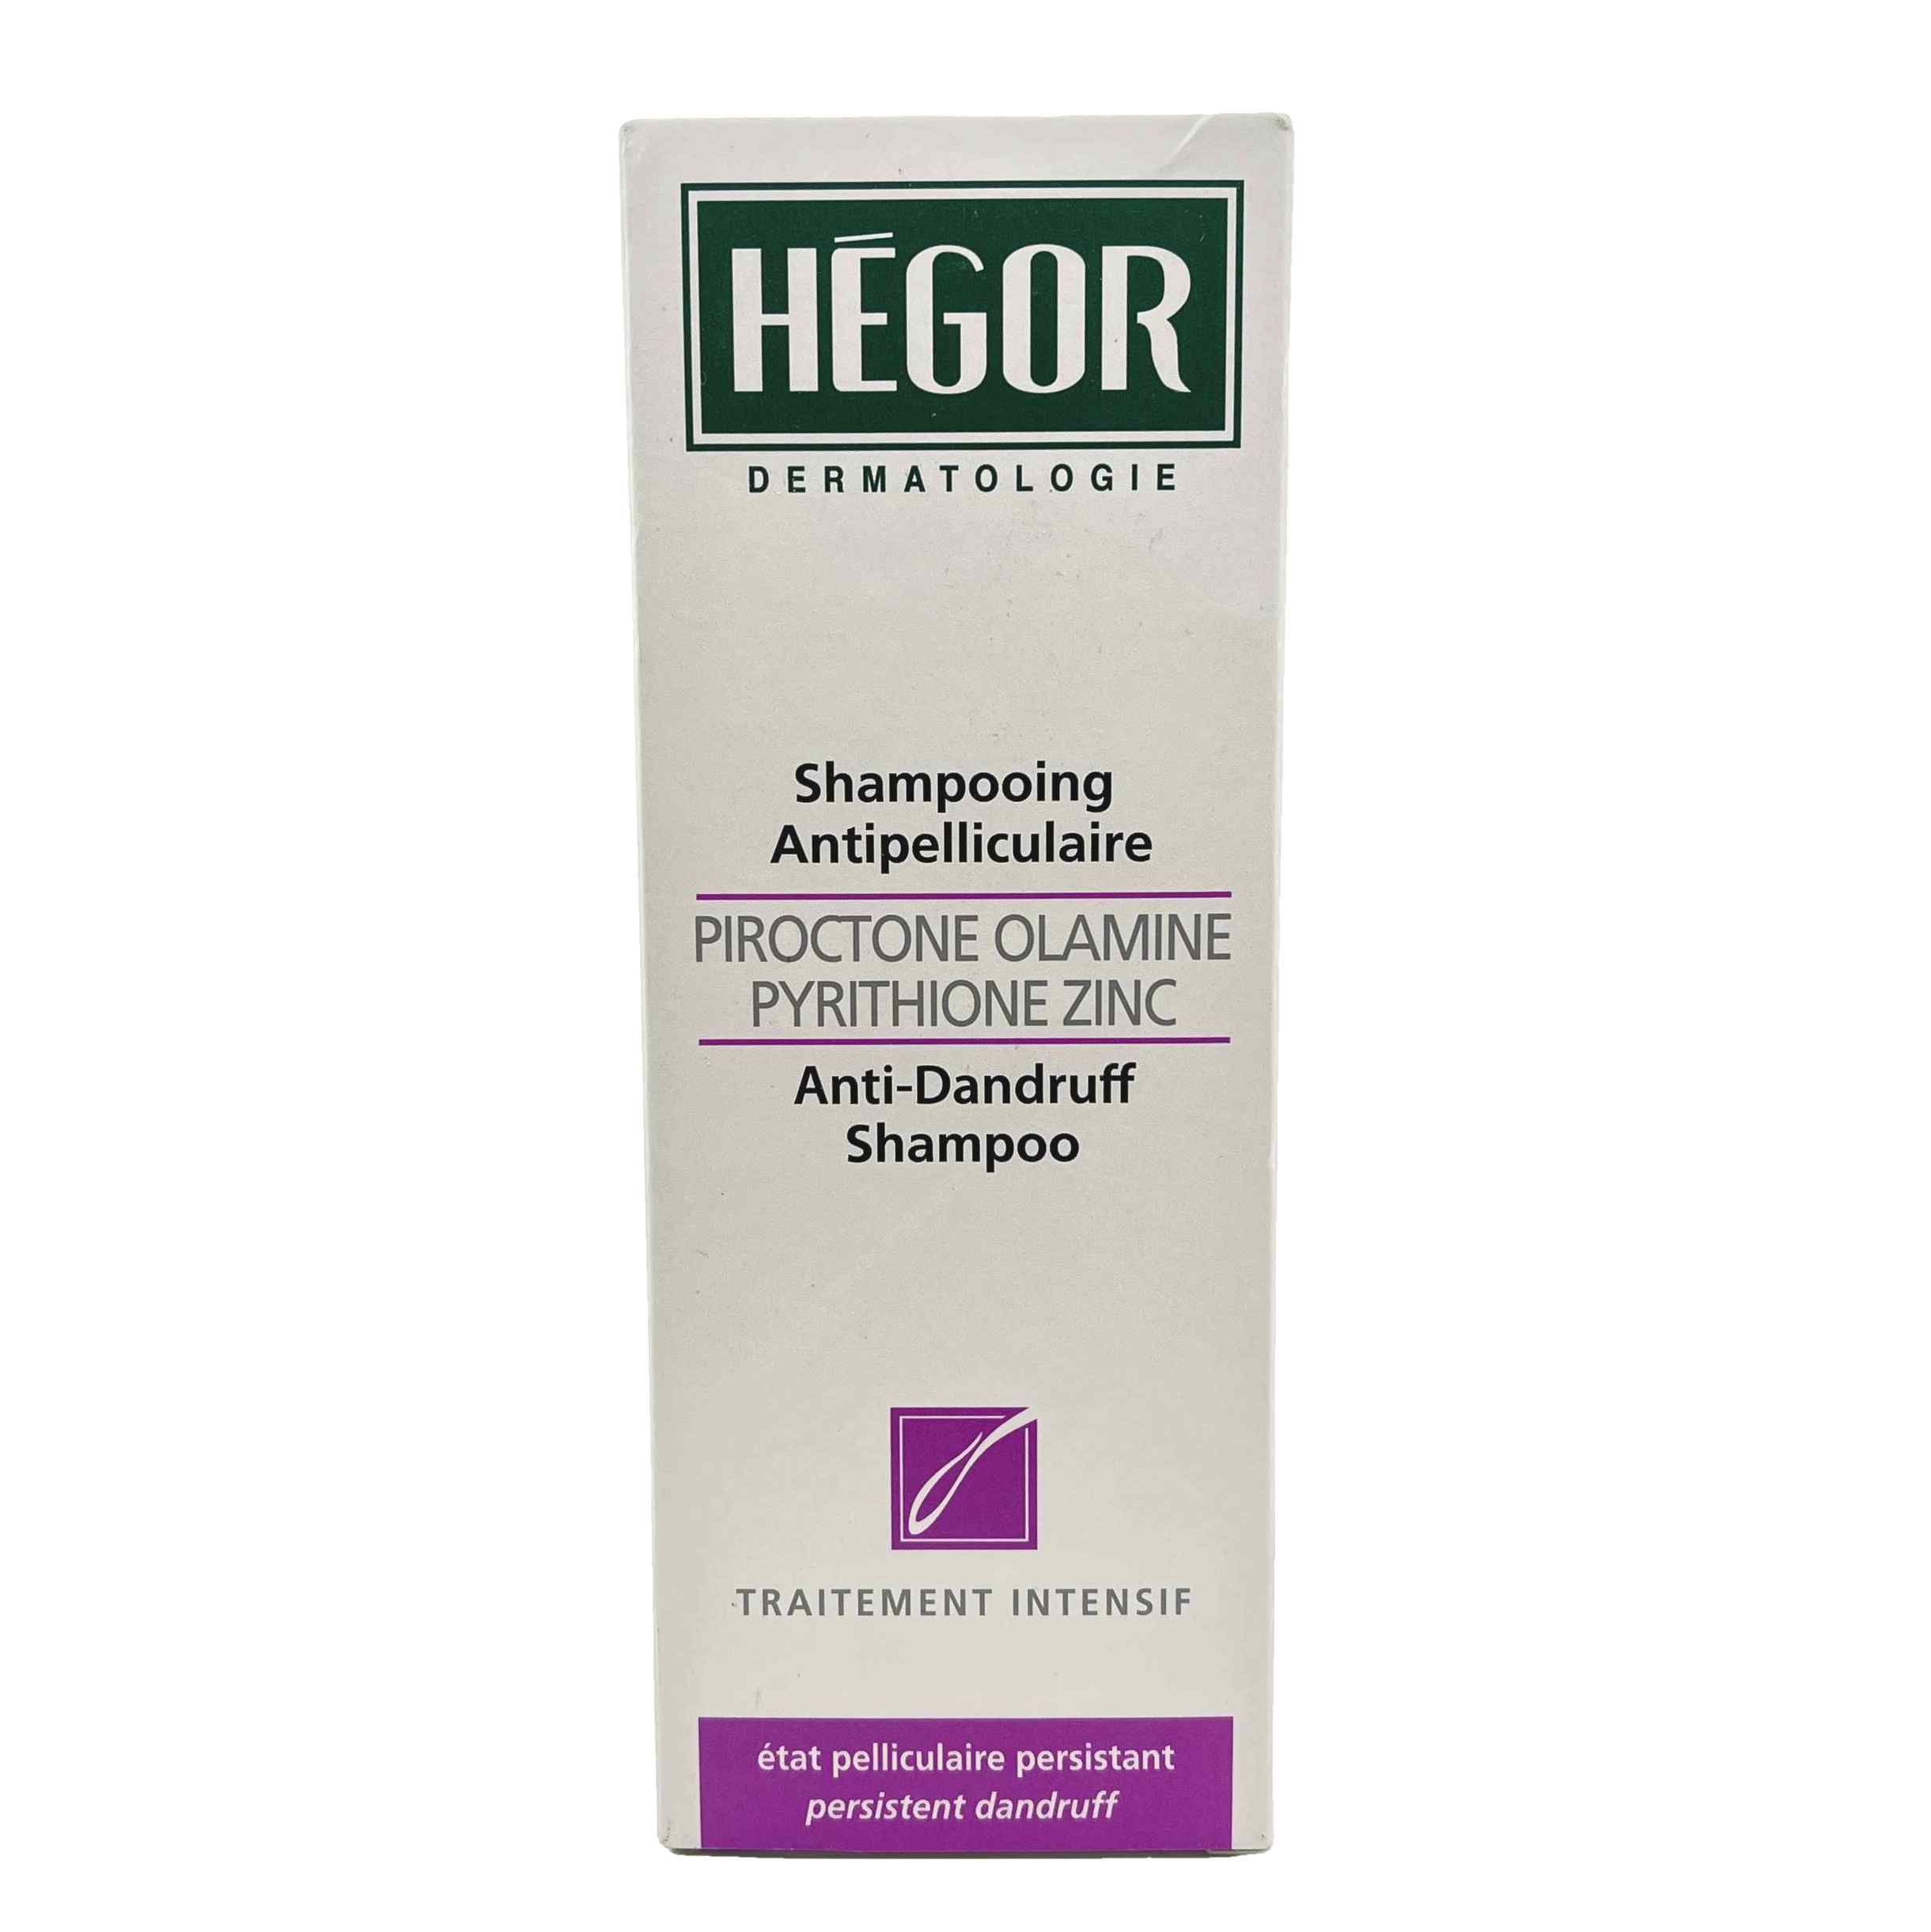 شامپو پیروکتون اولامین هگور مخصوص شوره های مقاوم به درمان Hegor